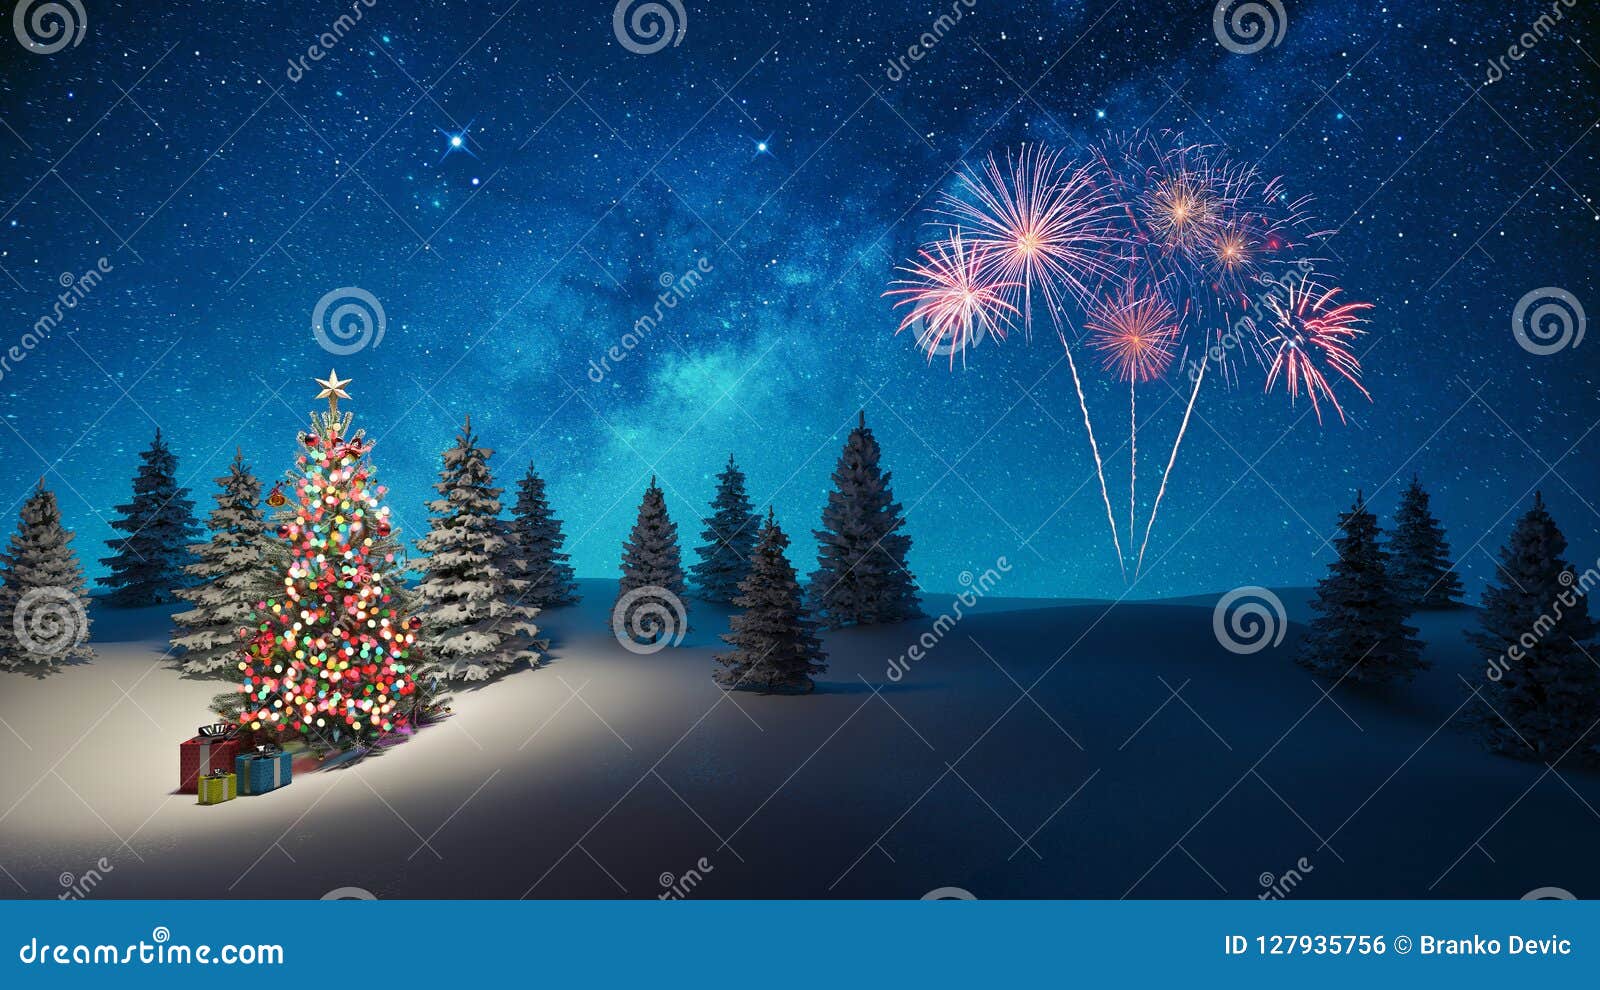 Christmas tree: Tuyệt đẹp và phù hợp cho mùa lễ hội, cây thông giáng sinh sẽ mang lại cho bạn cảm giác ấm áp và tươi vui trong mỗi dịp cuối năm. Xem hình ảnh liên quan để khám phá thêm về các sự lựa chọn thiết kế và cách trang trí cho cây thông giáng sinh của riêng bạn.